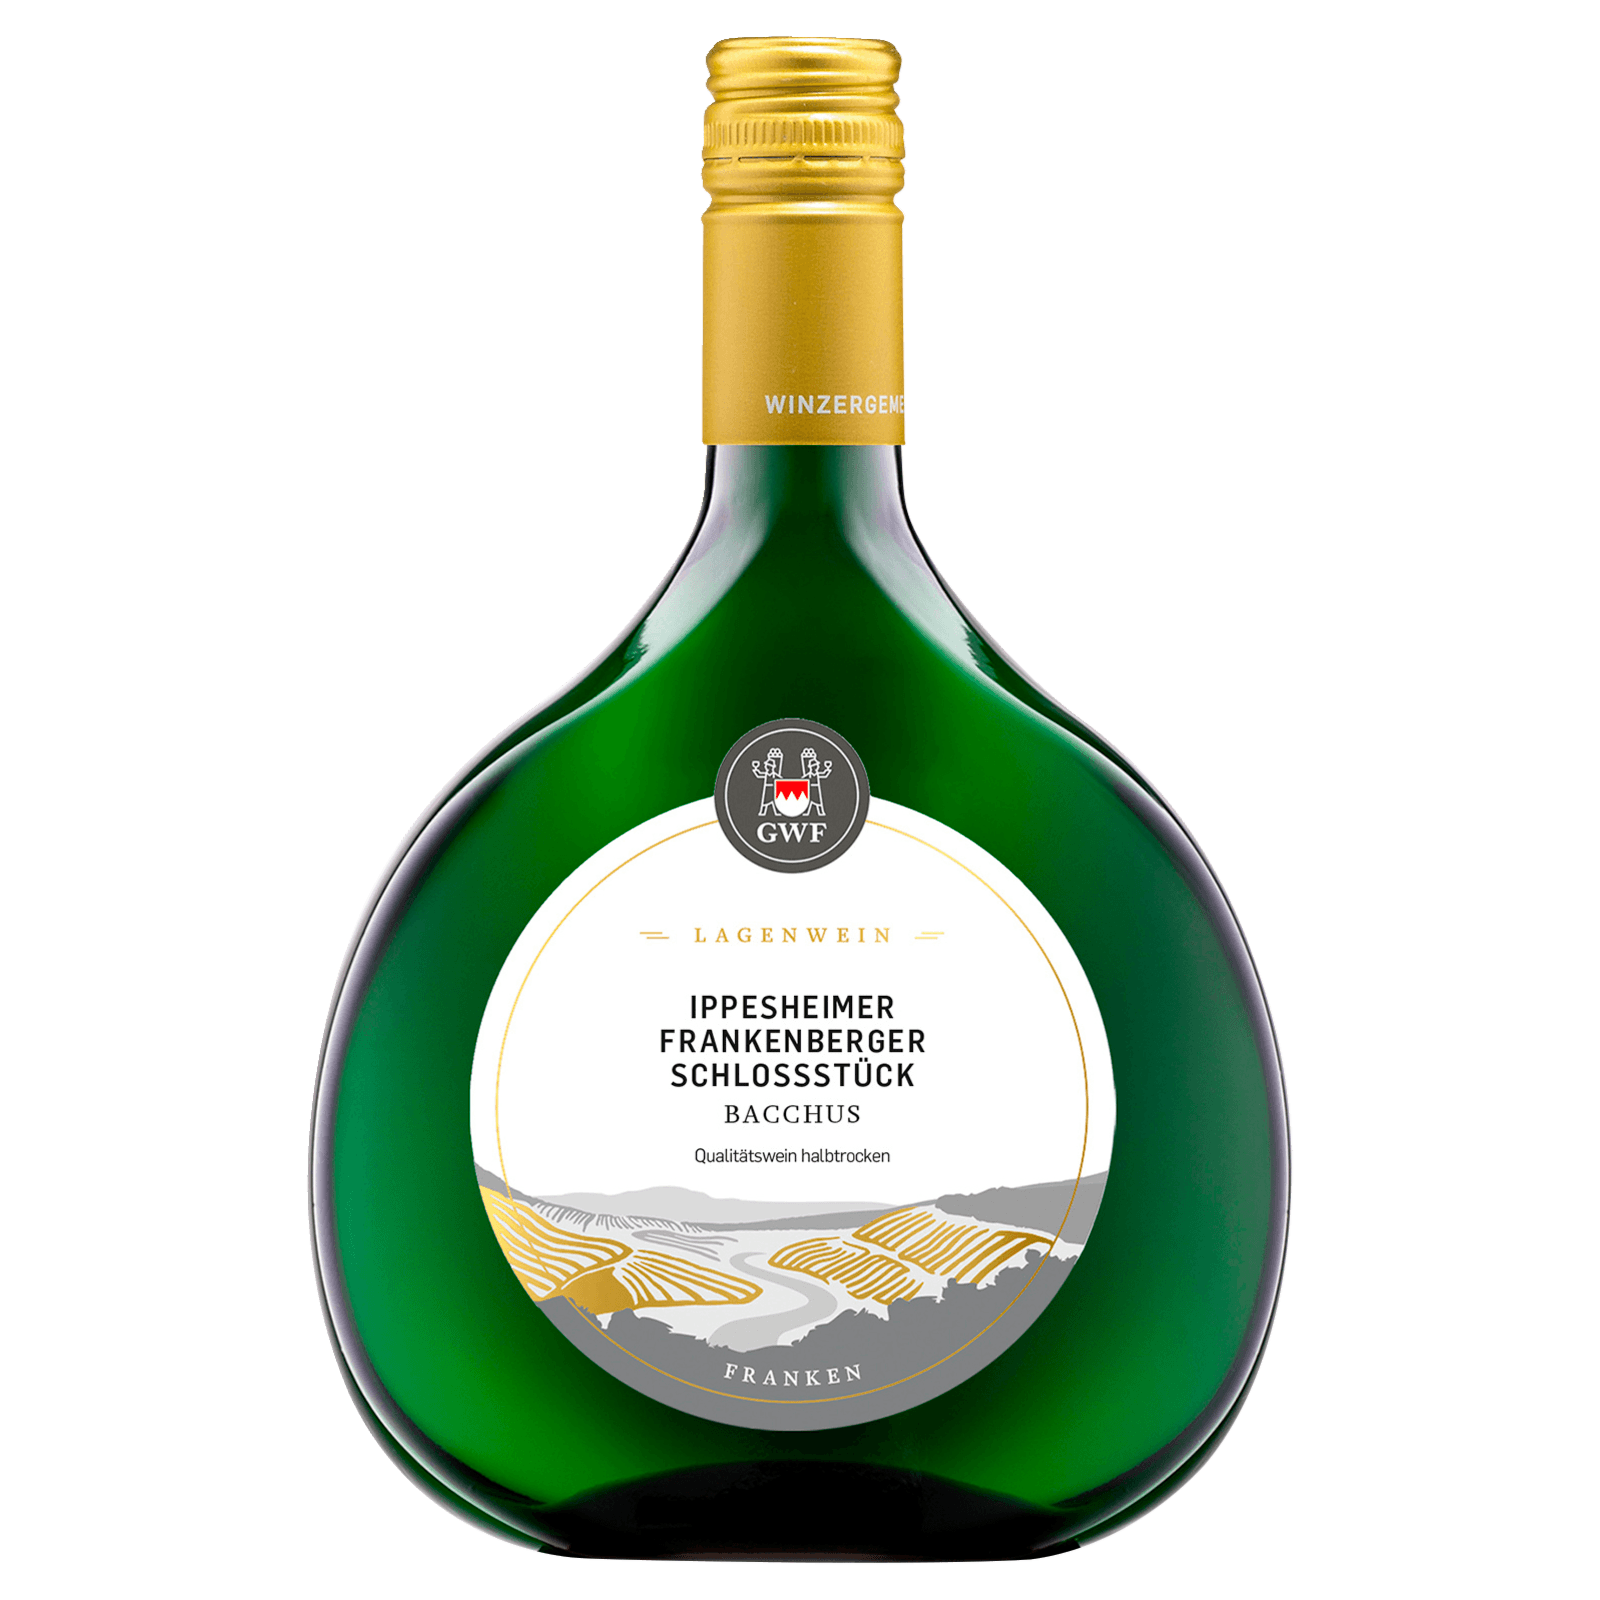 GWF Ippesheimer Frankenberger QbA Weißwein online REWE Schlossstück 0,75l Bacchus bestellen! bei halbtrocken